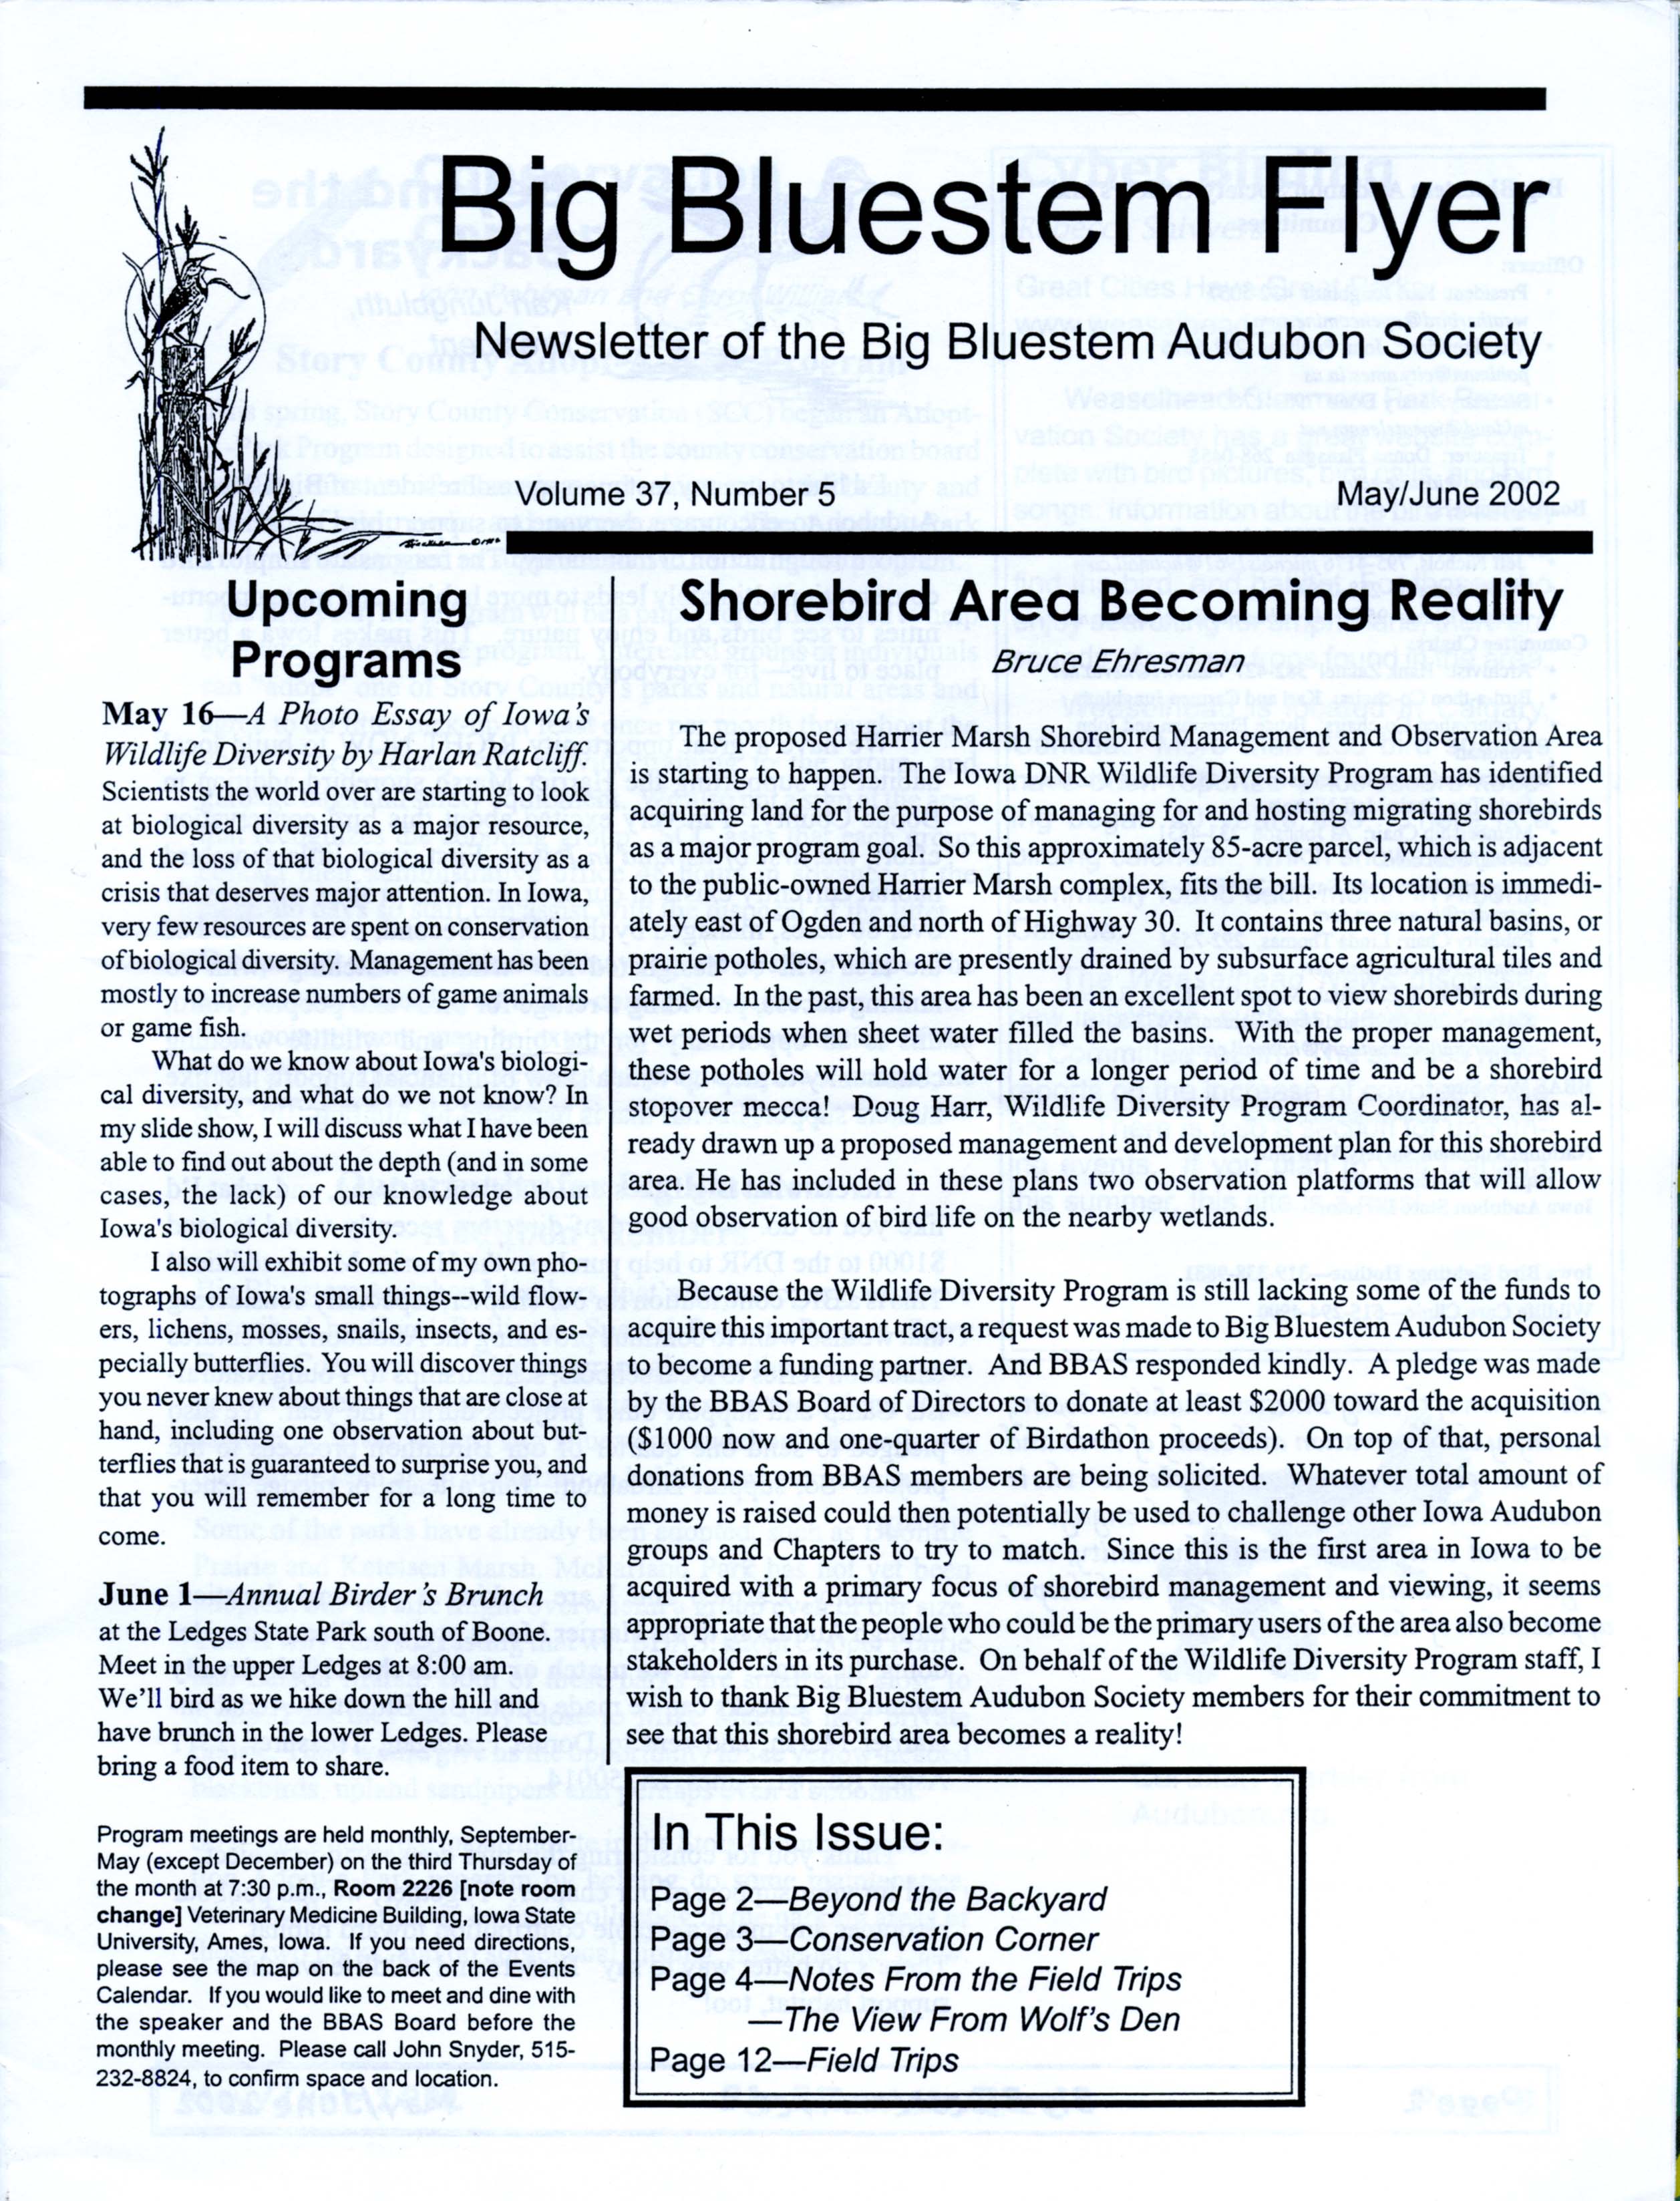 Big Bluestem Flyer, Volume 37, Number 5, May/June 2002